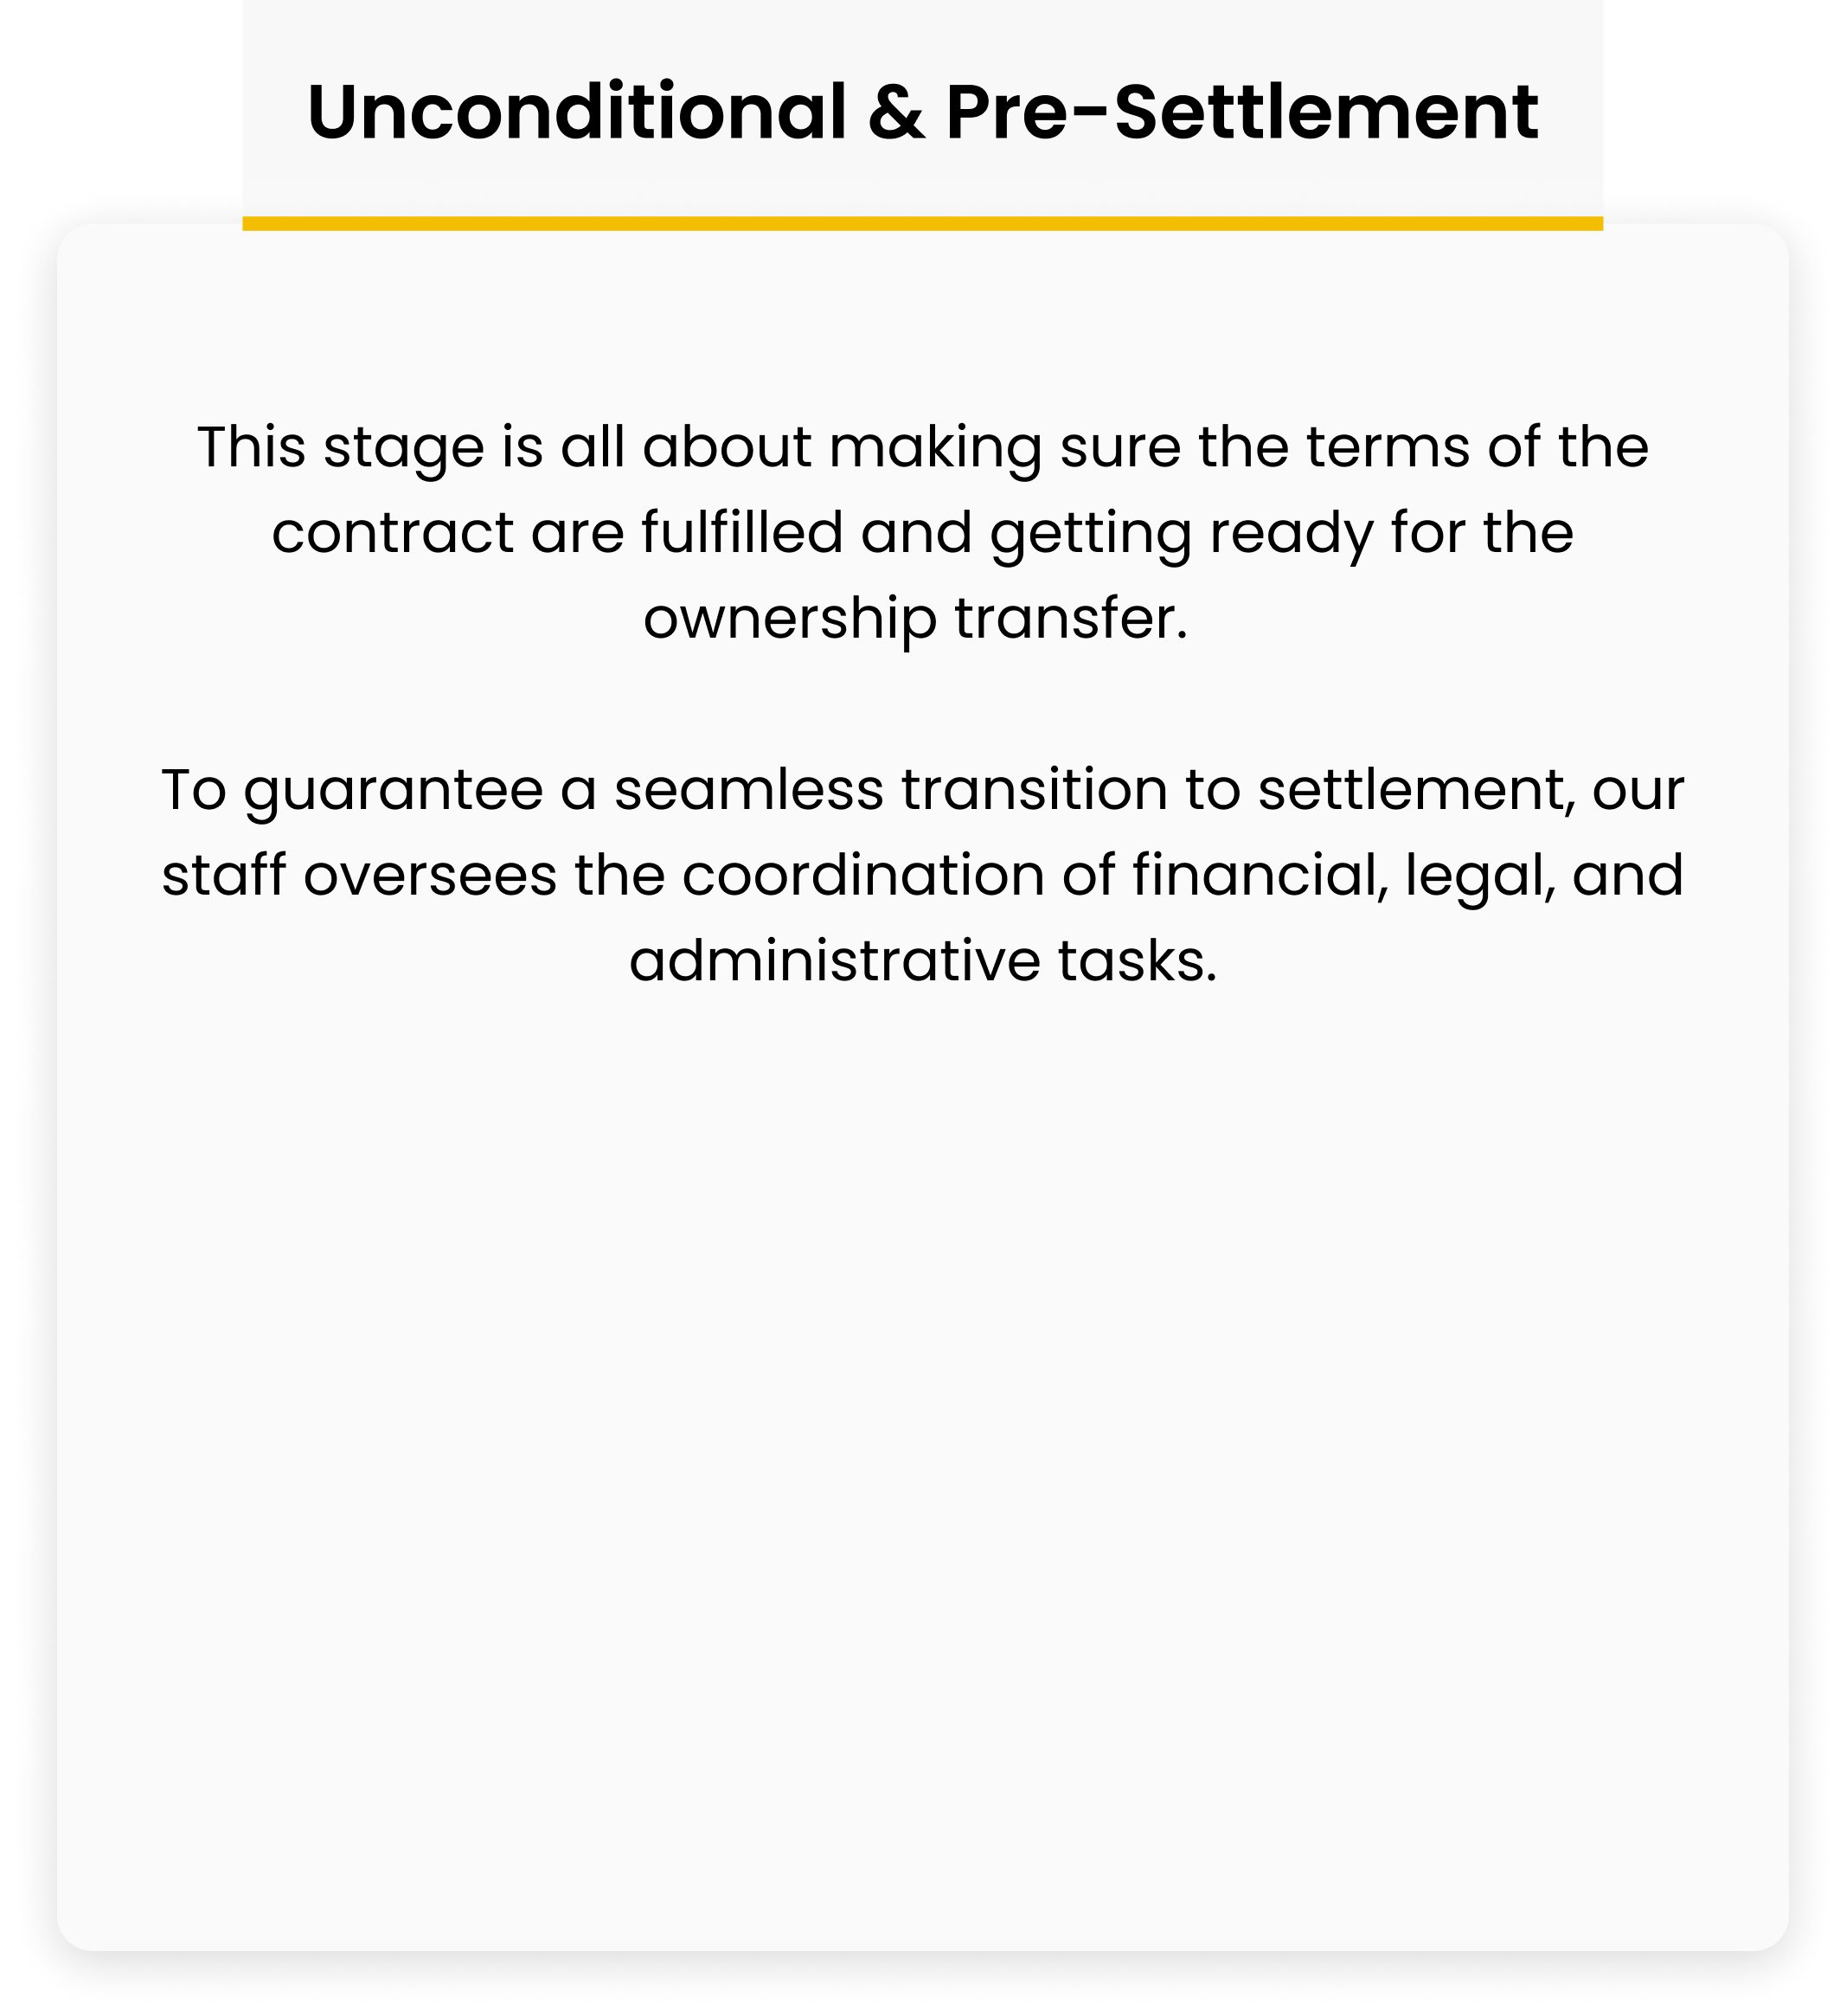 Unconditional & Pre-Settlement